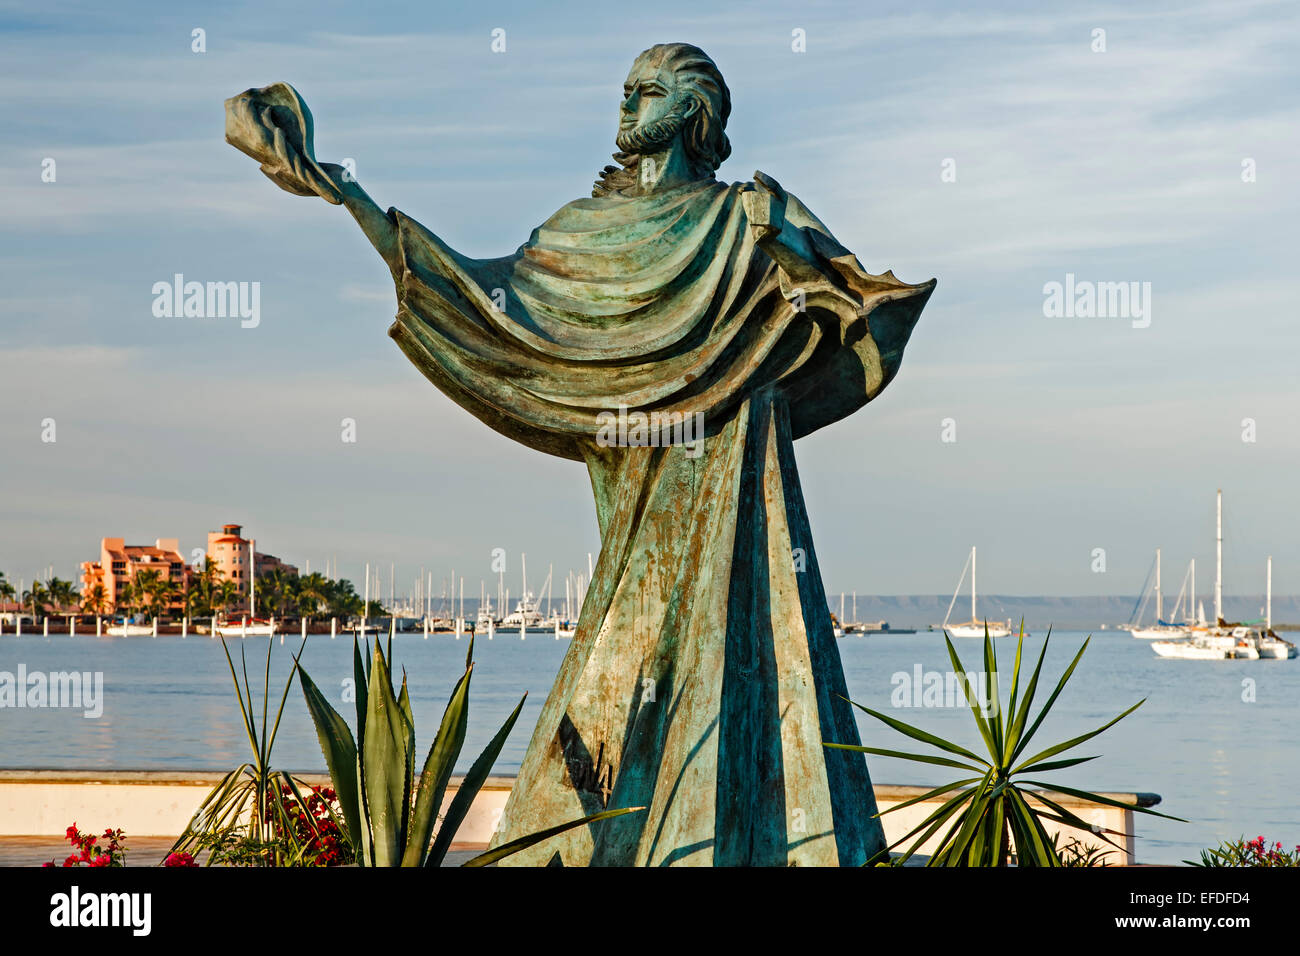 Sculpture of person holding a shell and bay,  Malecon (seaside promenade), La Paz, Baja California Sur, Mexico Stock Photo